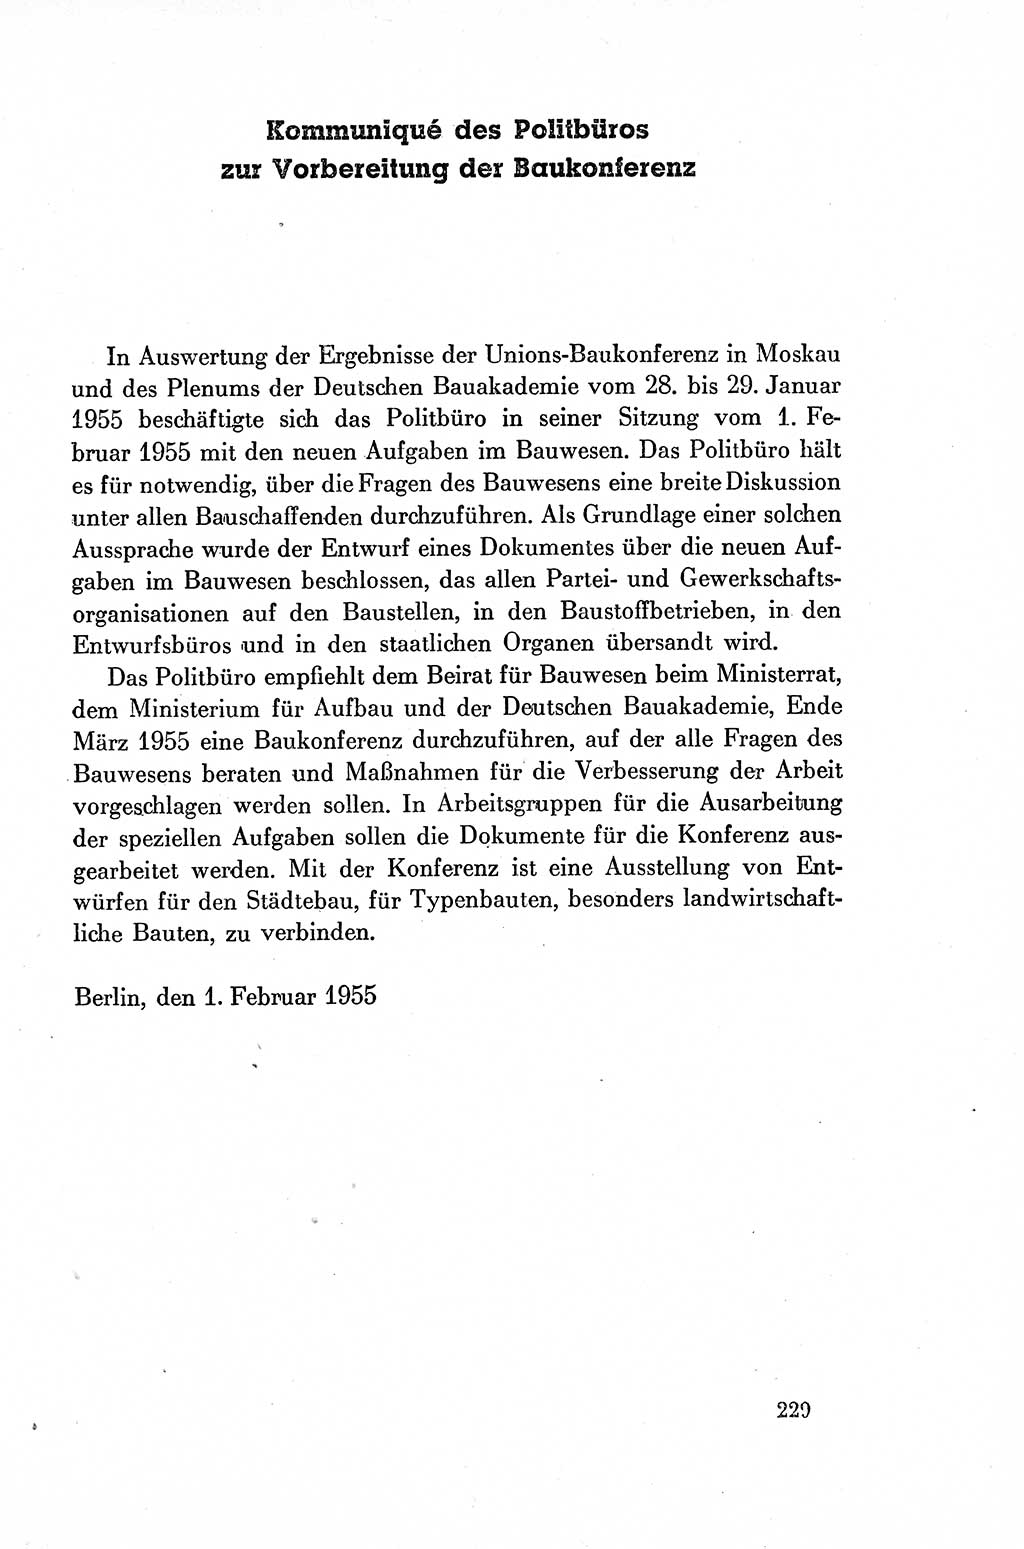 Dokumente der Sozialistischen Einheitspartei Deutschlands (SED) [Deutsche Demokratische Republik (DDR)] 1954-1955, Seite 229 (Dok. SED DDR 1954-1955, S. 229)